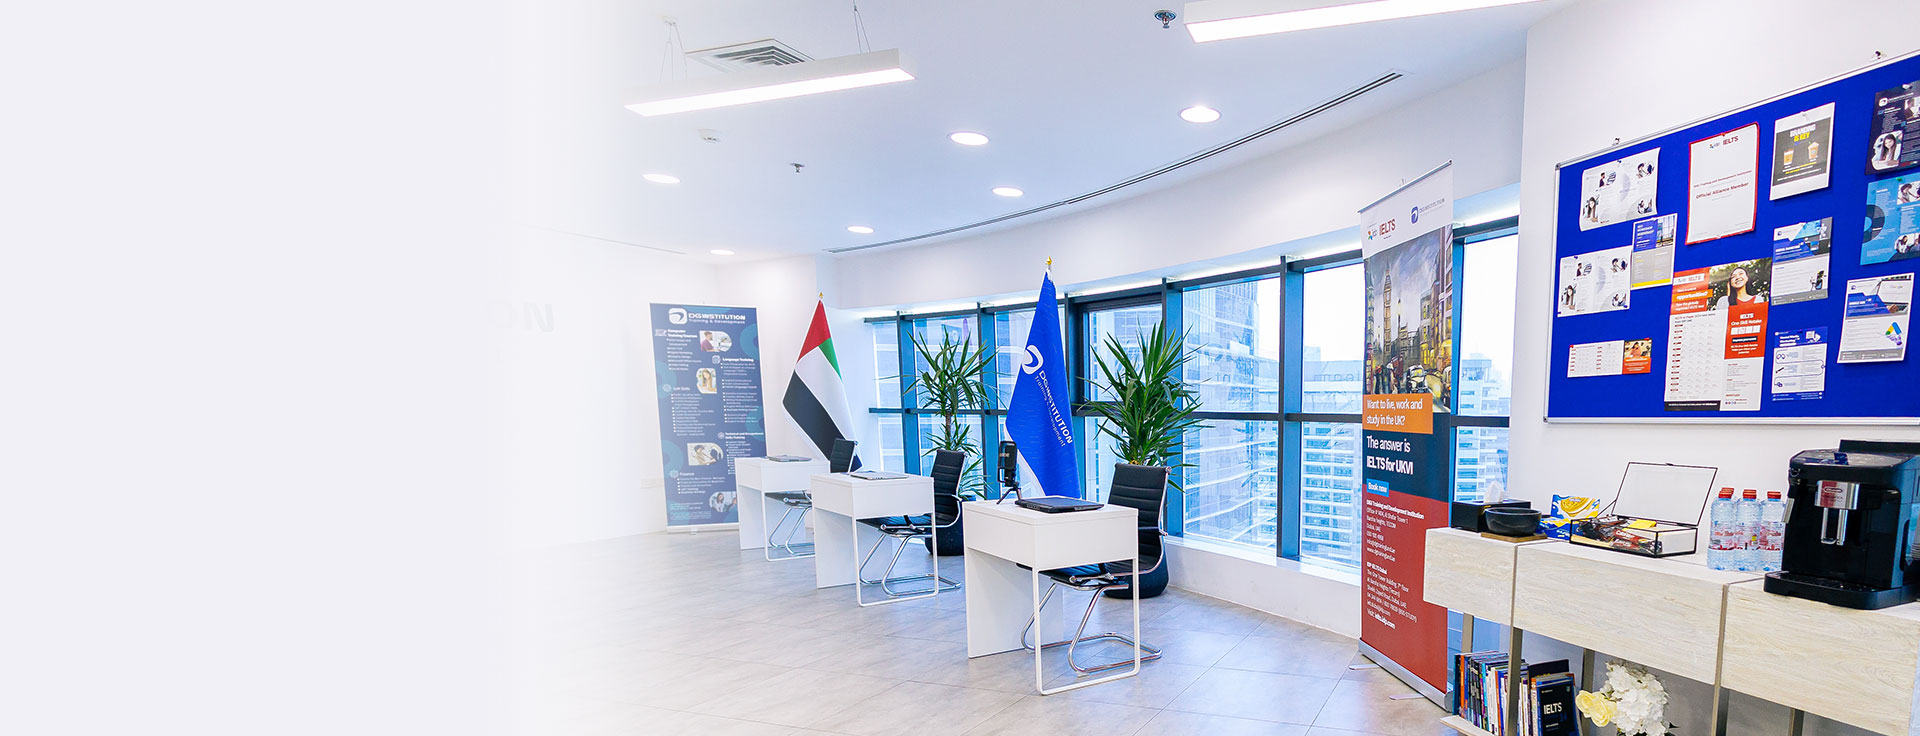 DG Training office space in Dubai